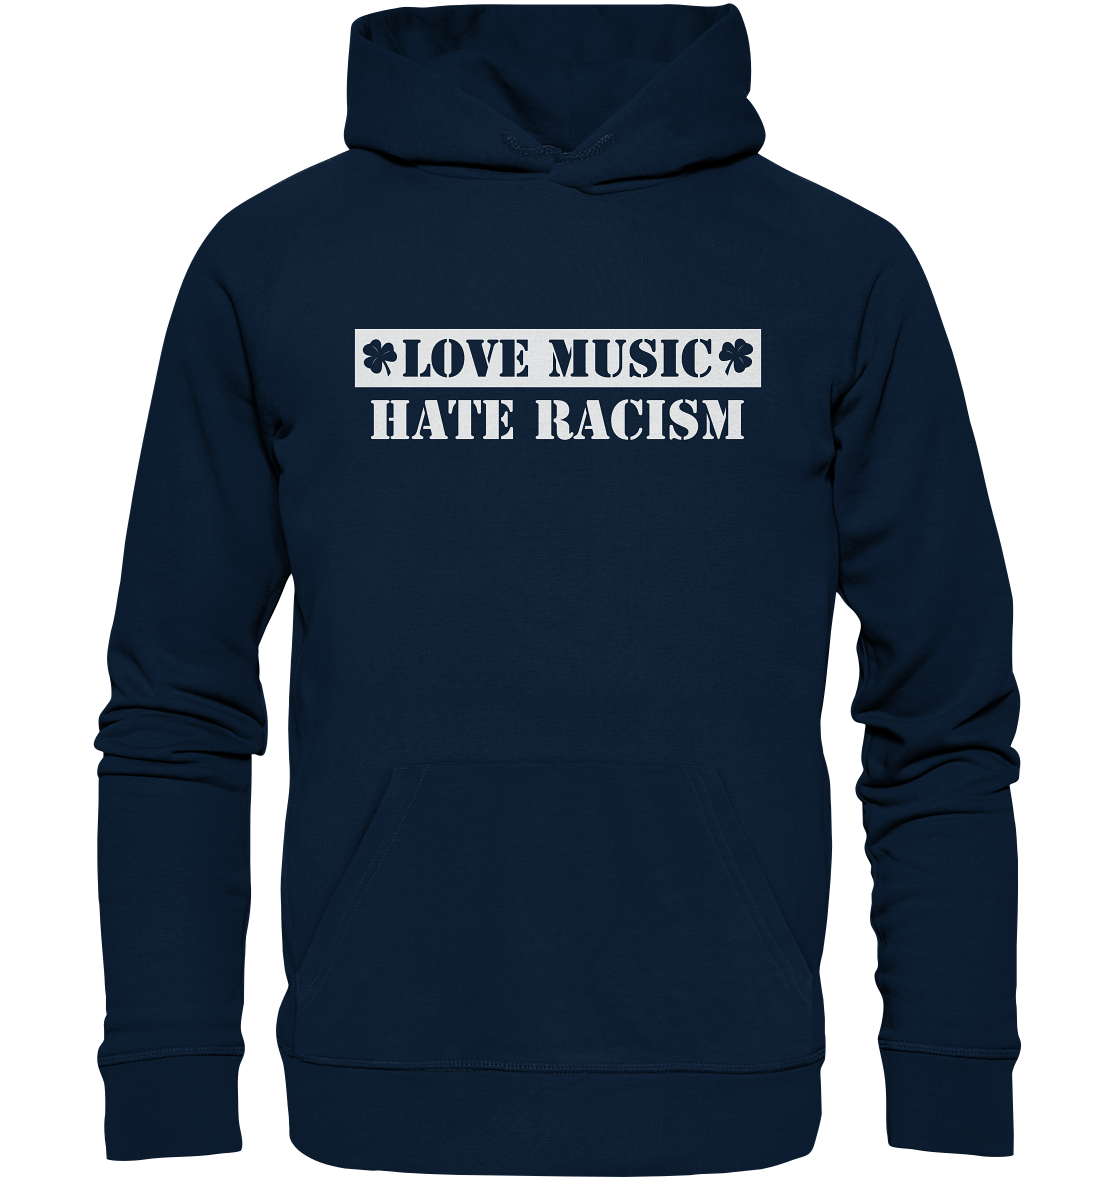 "Love Music - Hate Racism" - Organic Hoodie